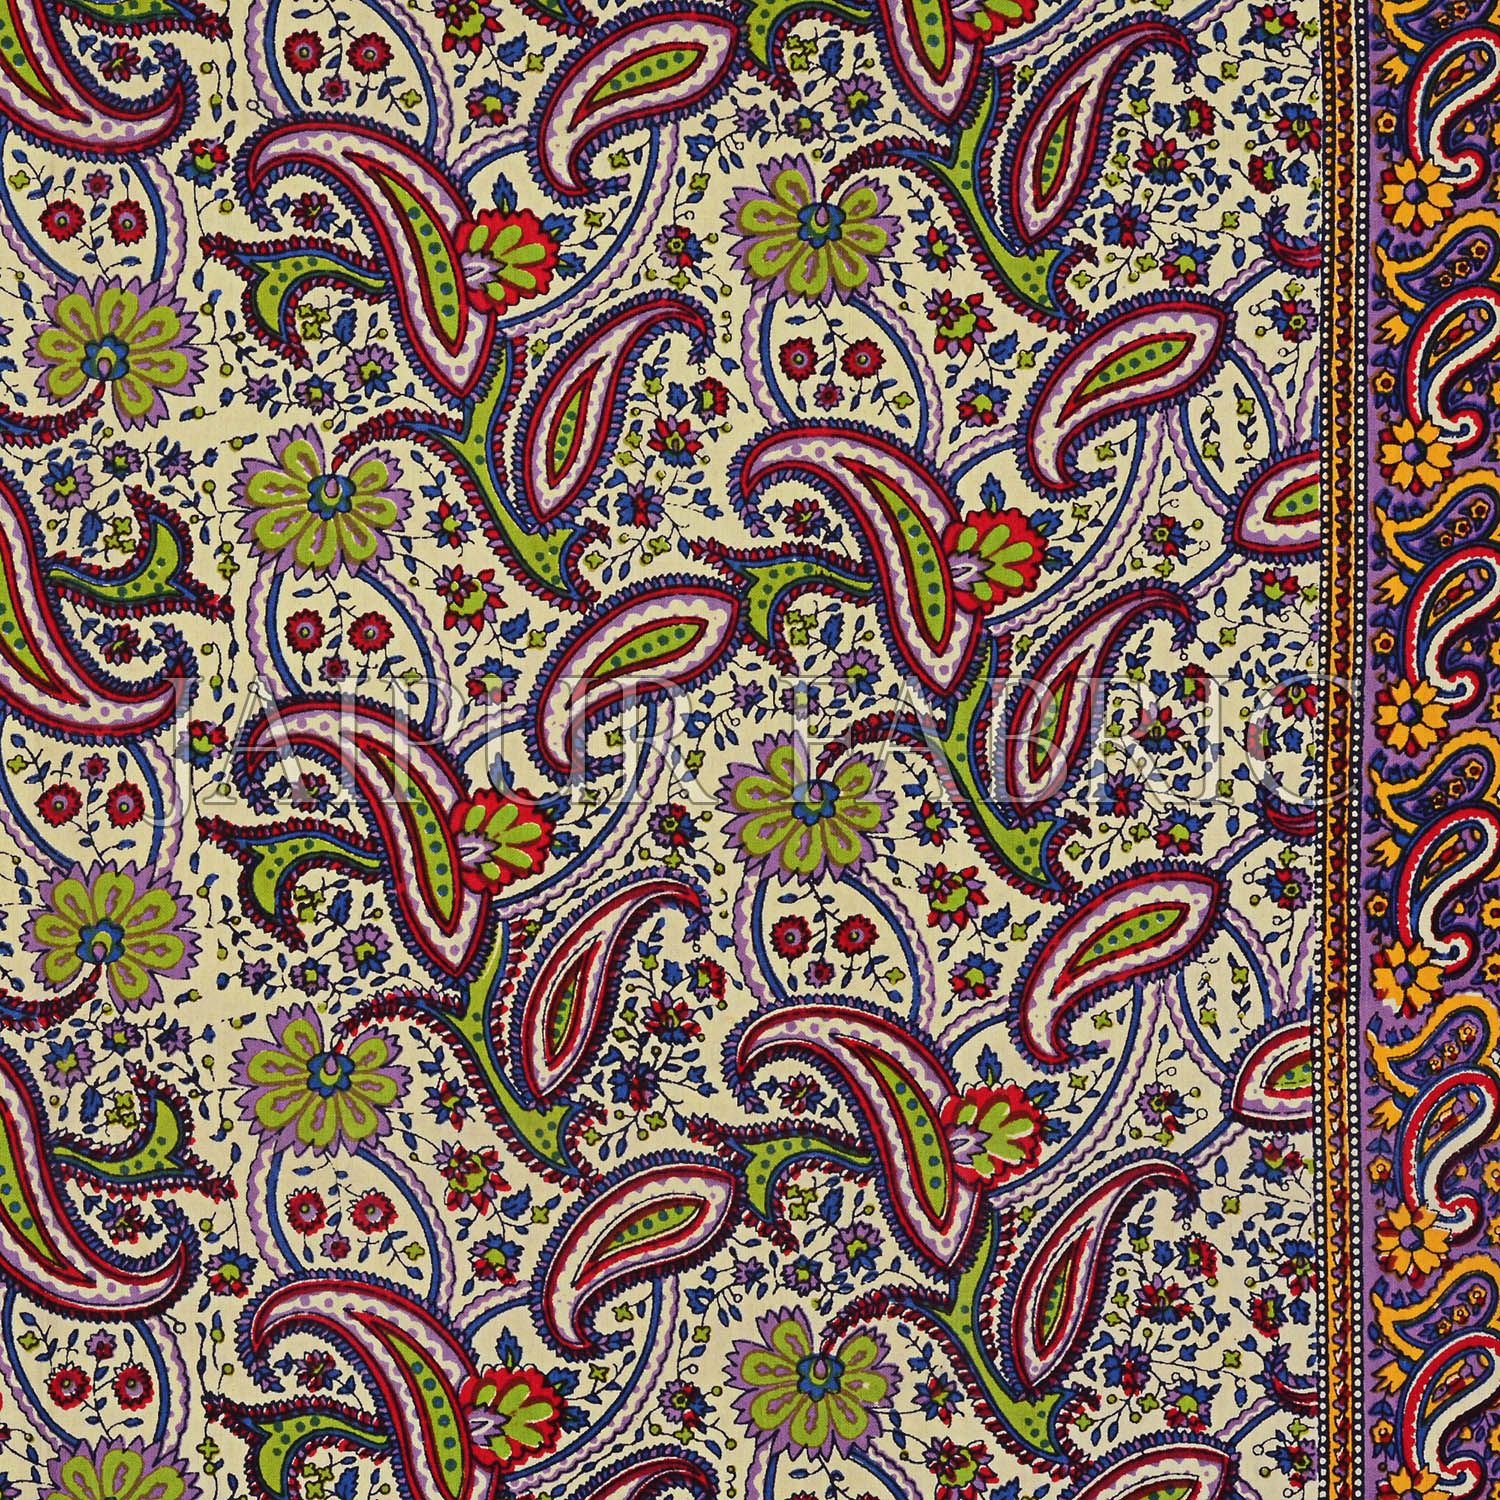 Yellow Rajasthani Jaipuri Printed Cotton Double Bed Sheet